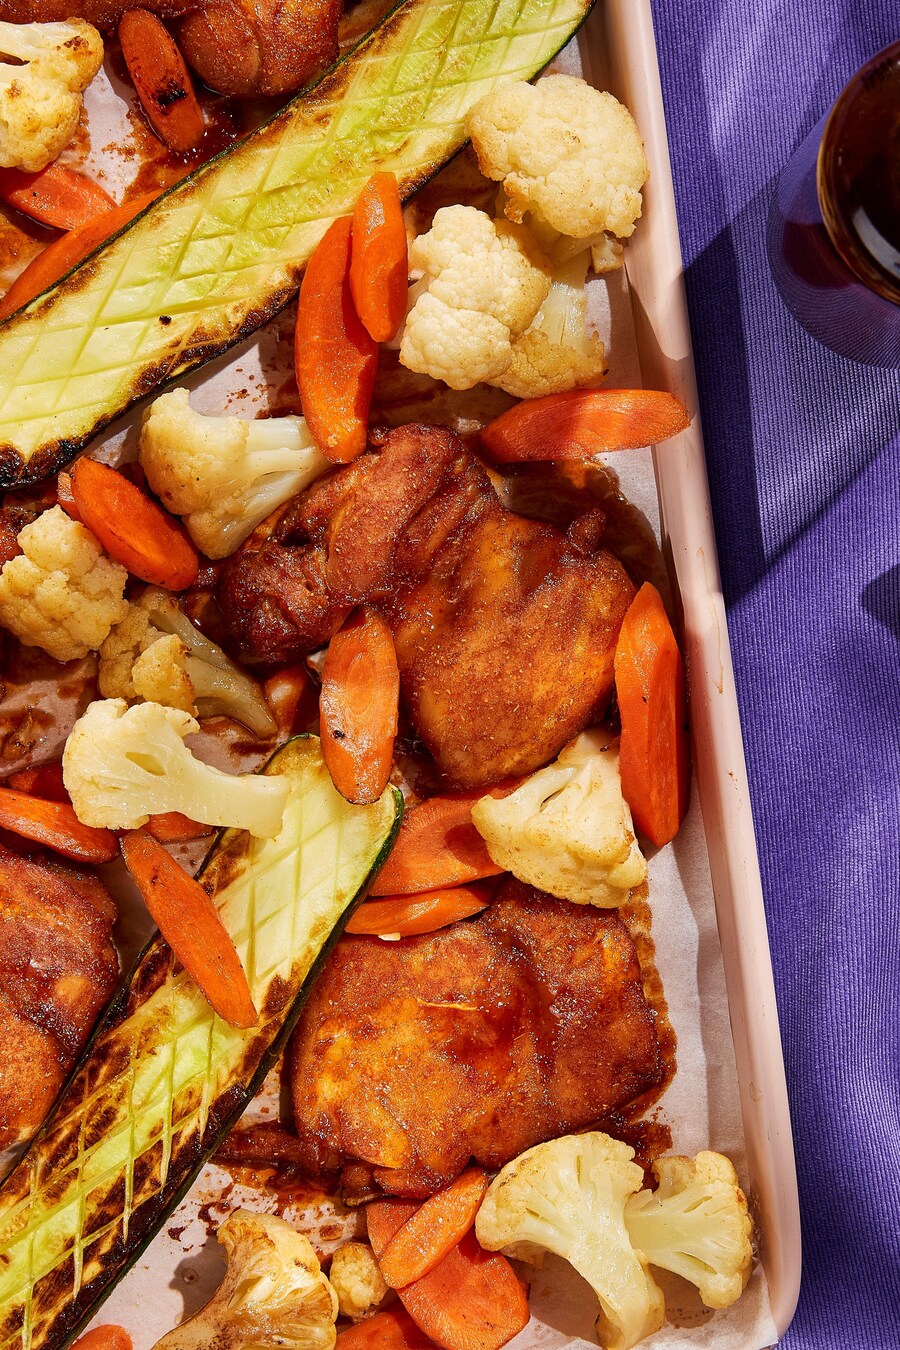 Des hauts de cuisses de poulet laqués de sauce BBQ, des tranches de carotte, des fleurons de chou-fleur et des courgettes sur une plaque à cuisson.